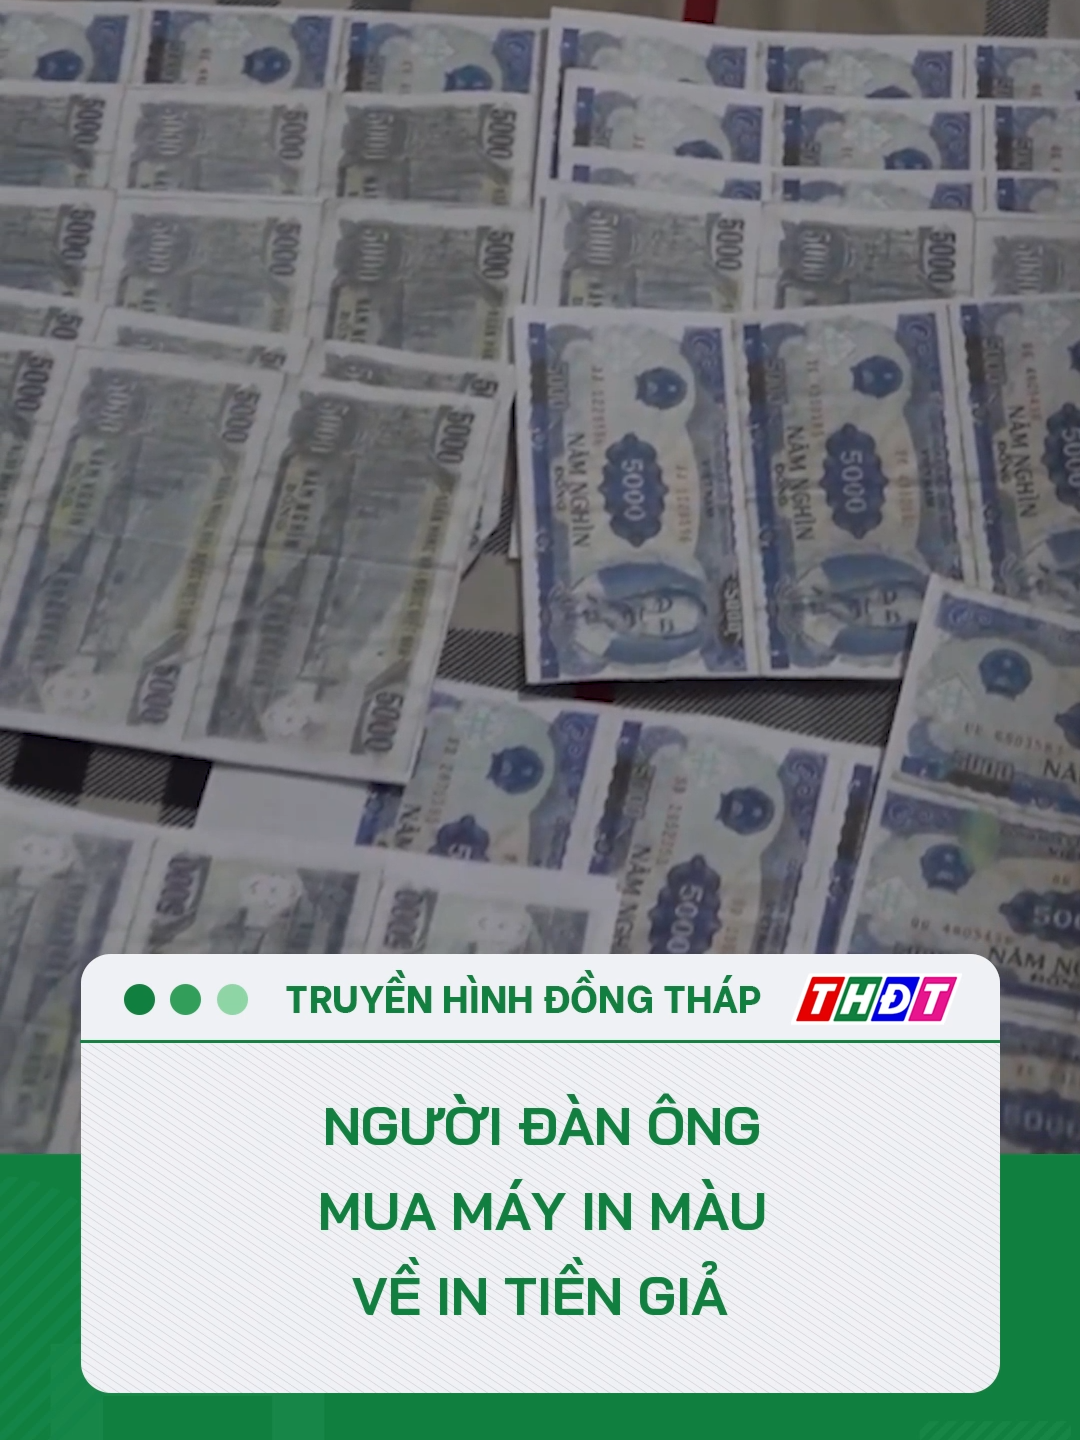 Bắt quả tang người đàn ông mua máy in màu về in tiền giả #tiktokthdt #thdt #dongthaptv #dongthap #mcv #tiktoknews